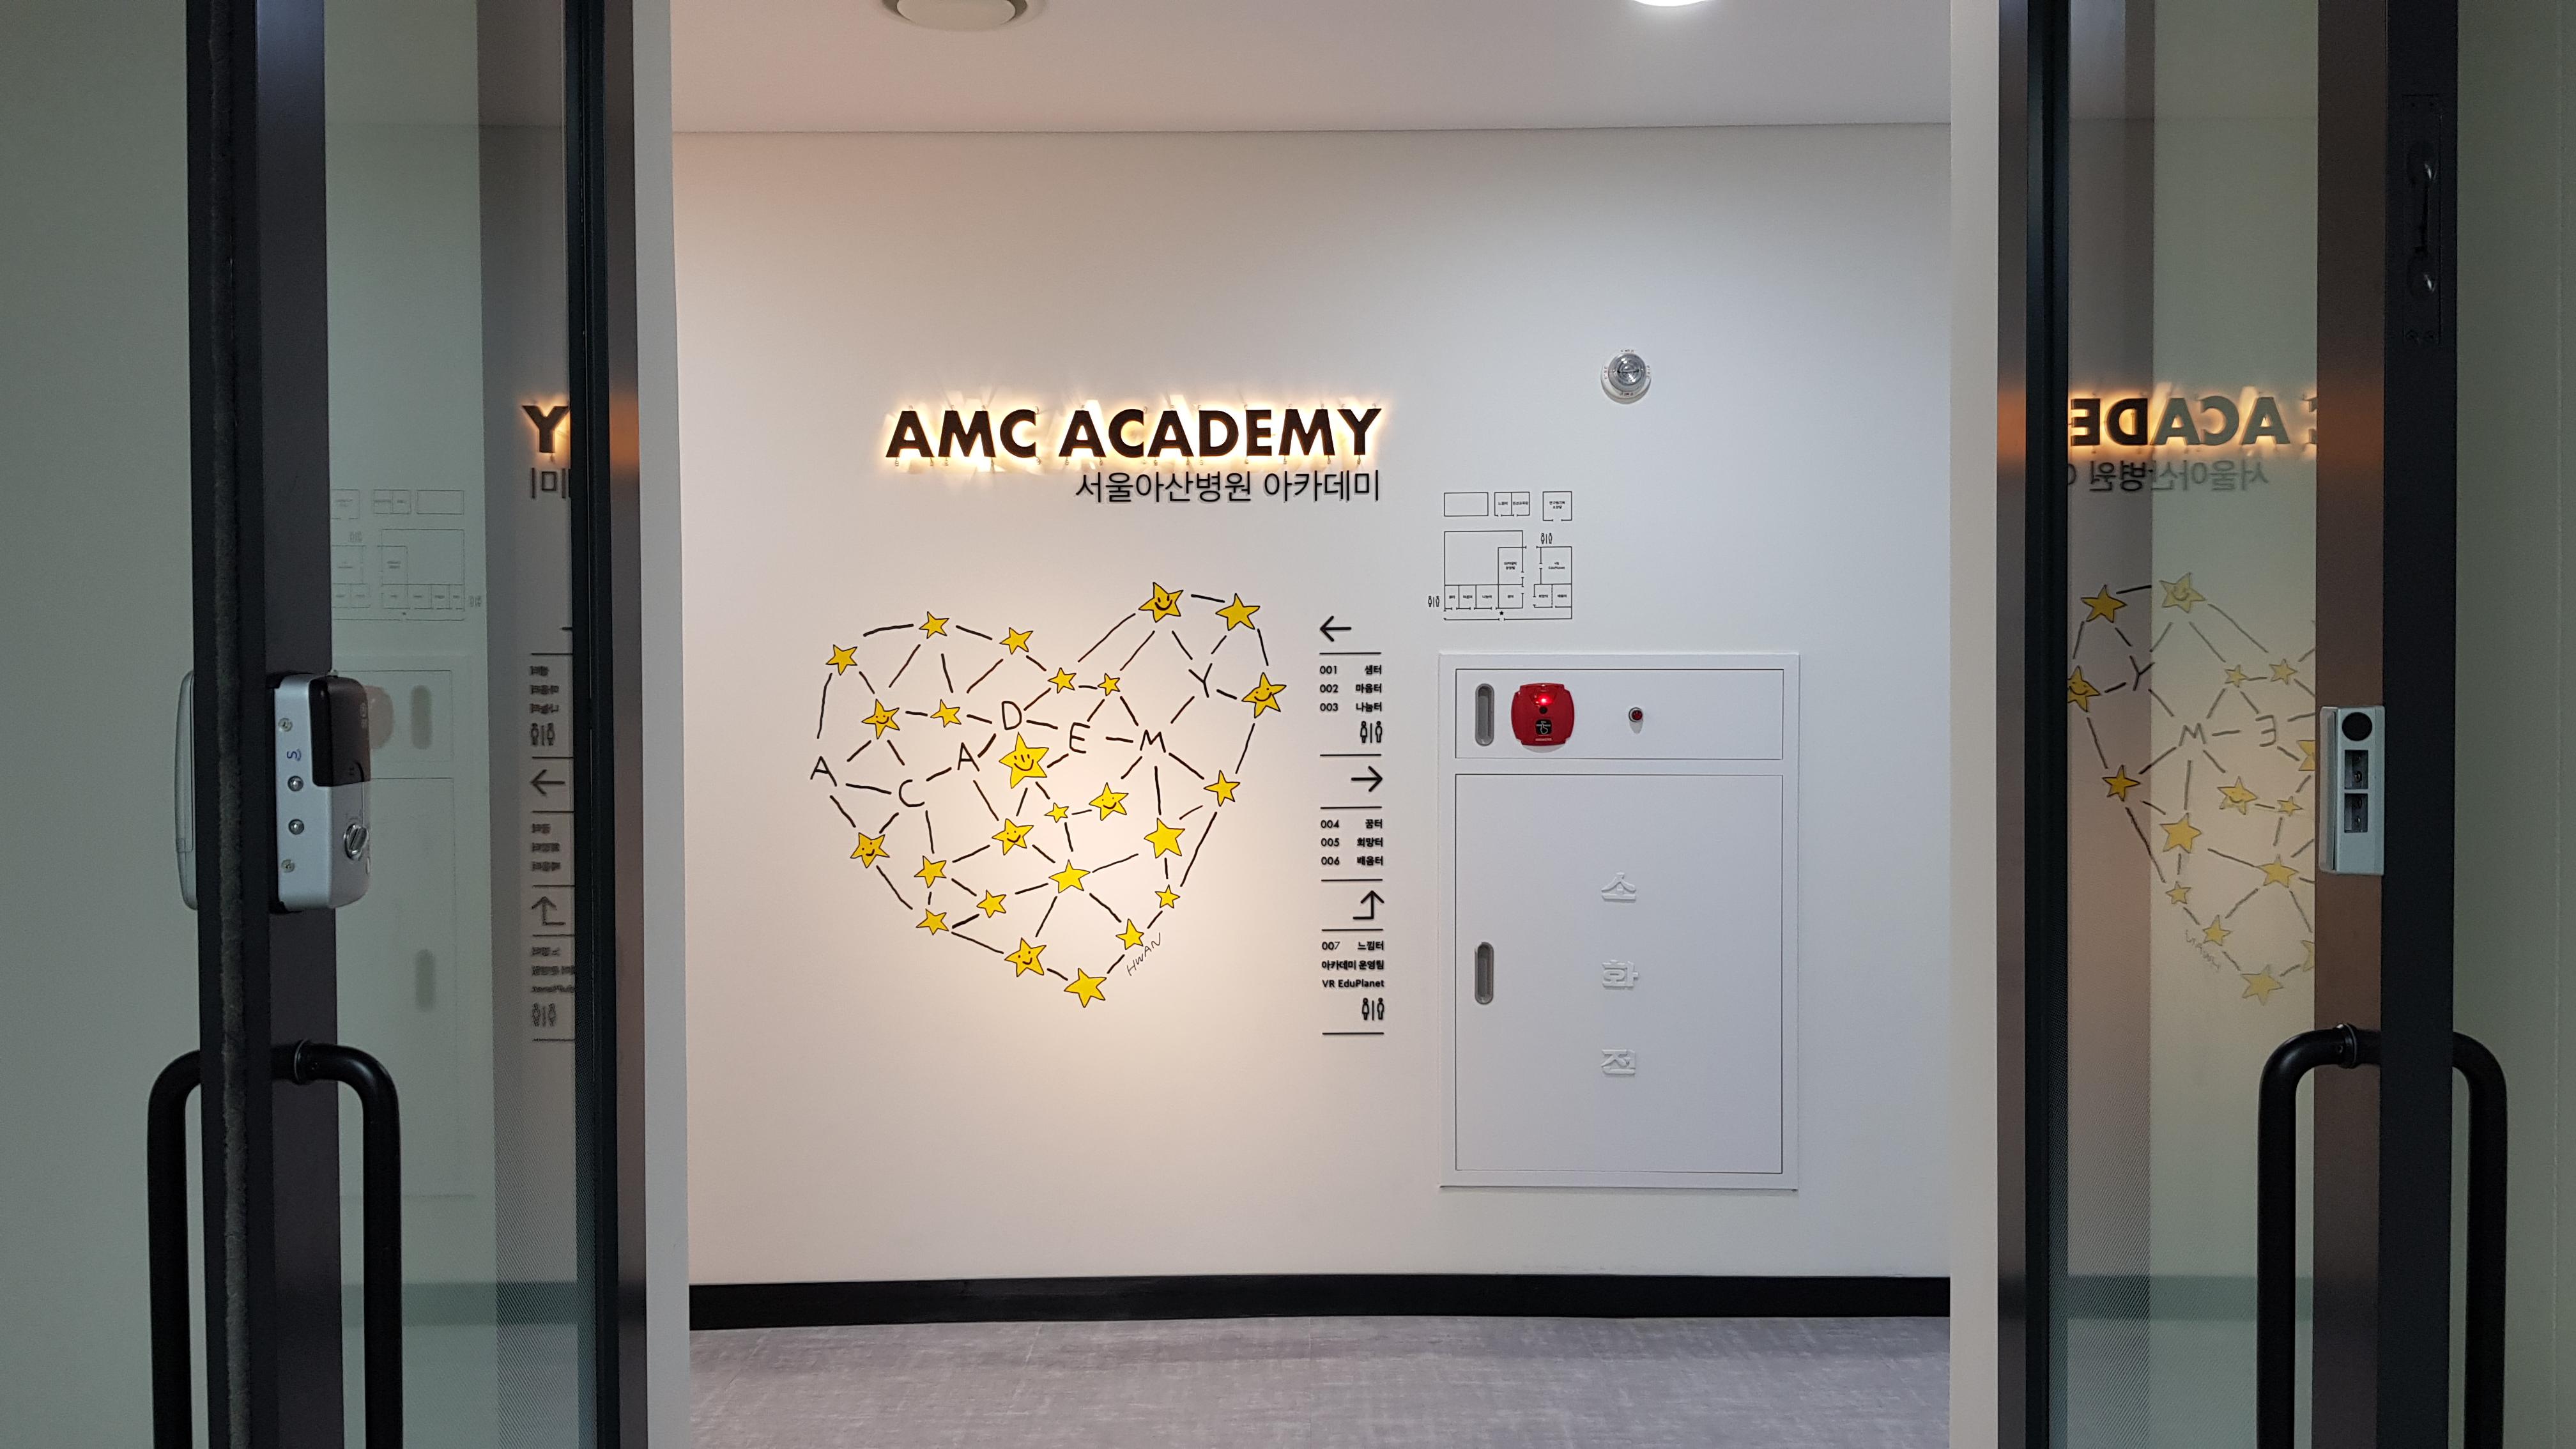 AMC Academy